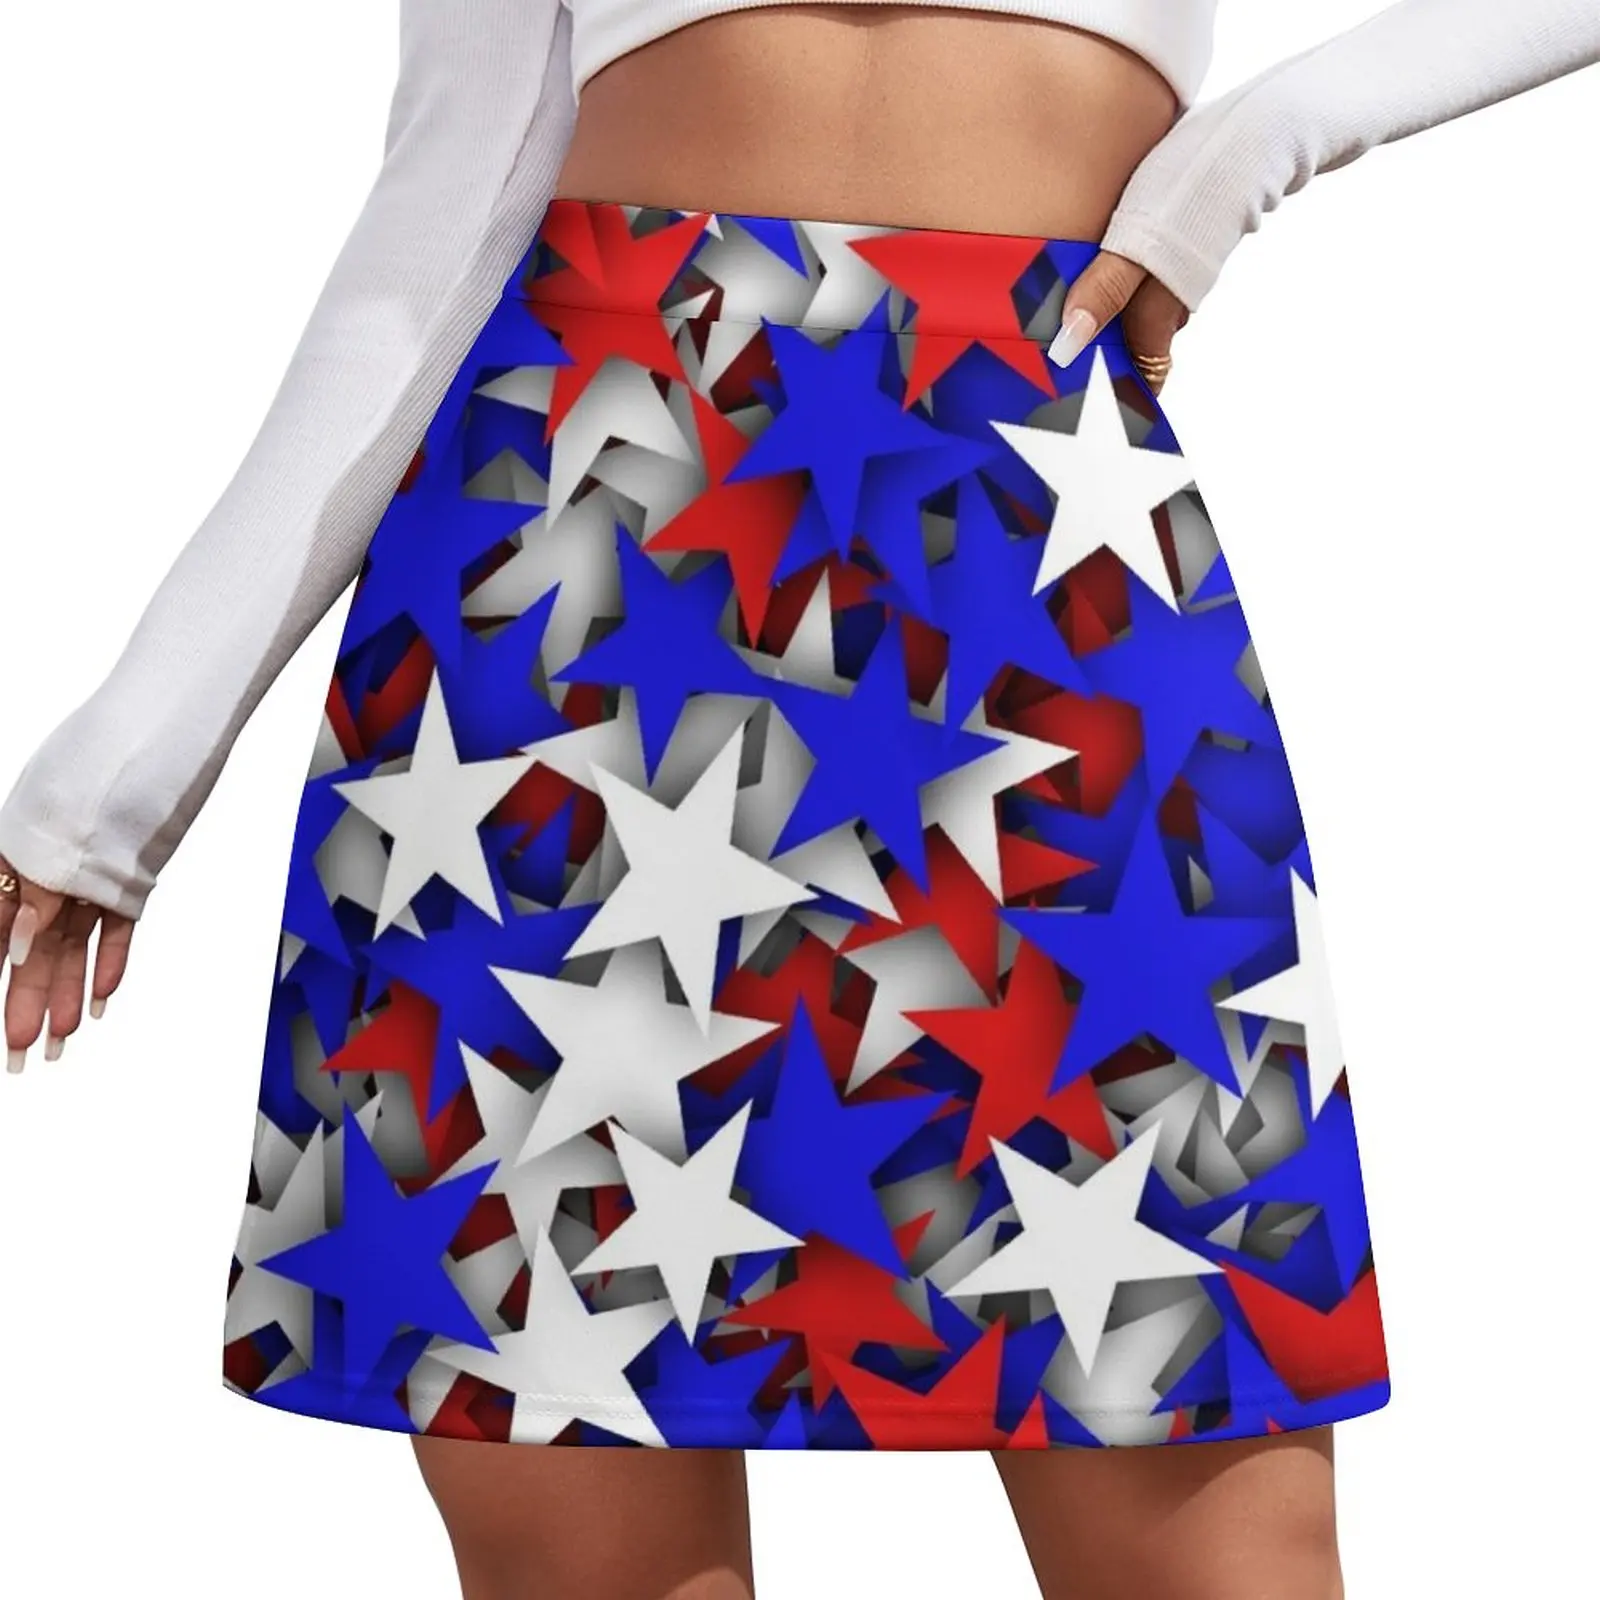 

Blue, red, white stars Mini Skirt kpop short skirt chic and elegant woman skirt